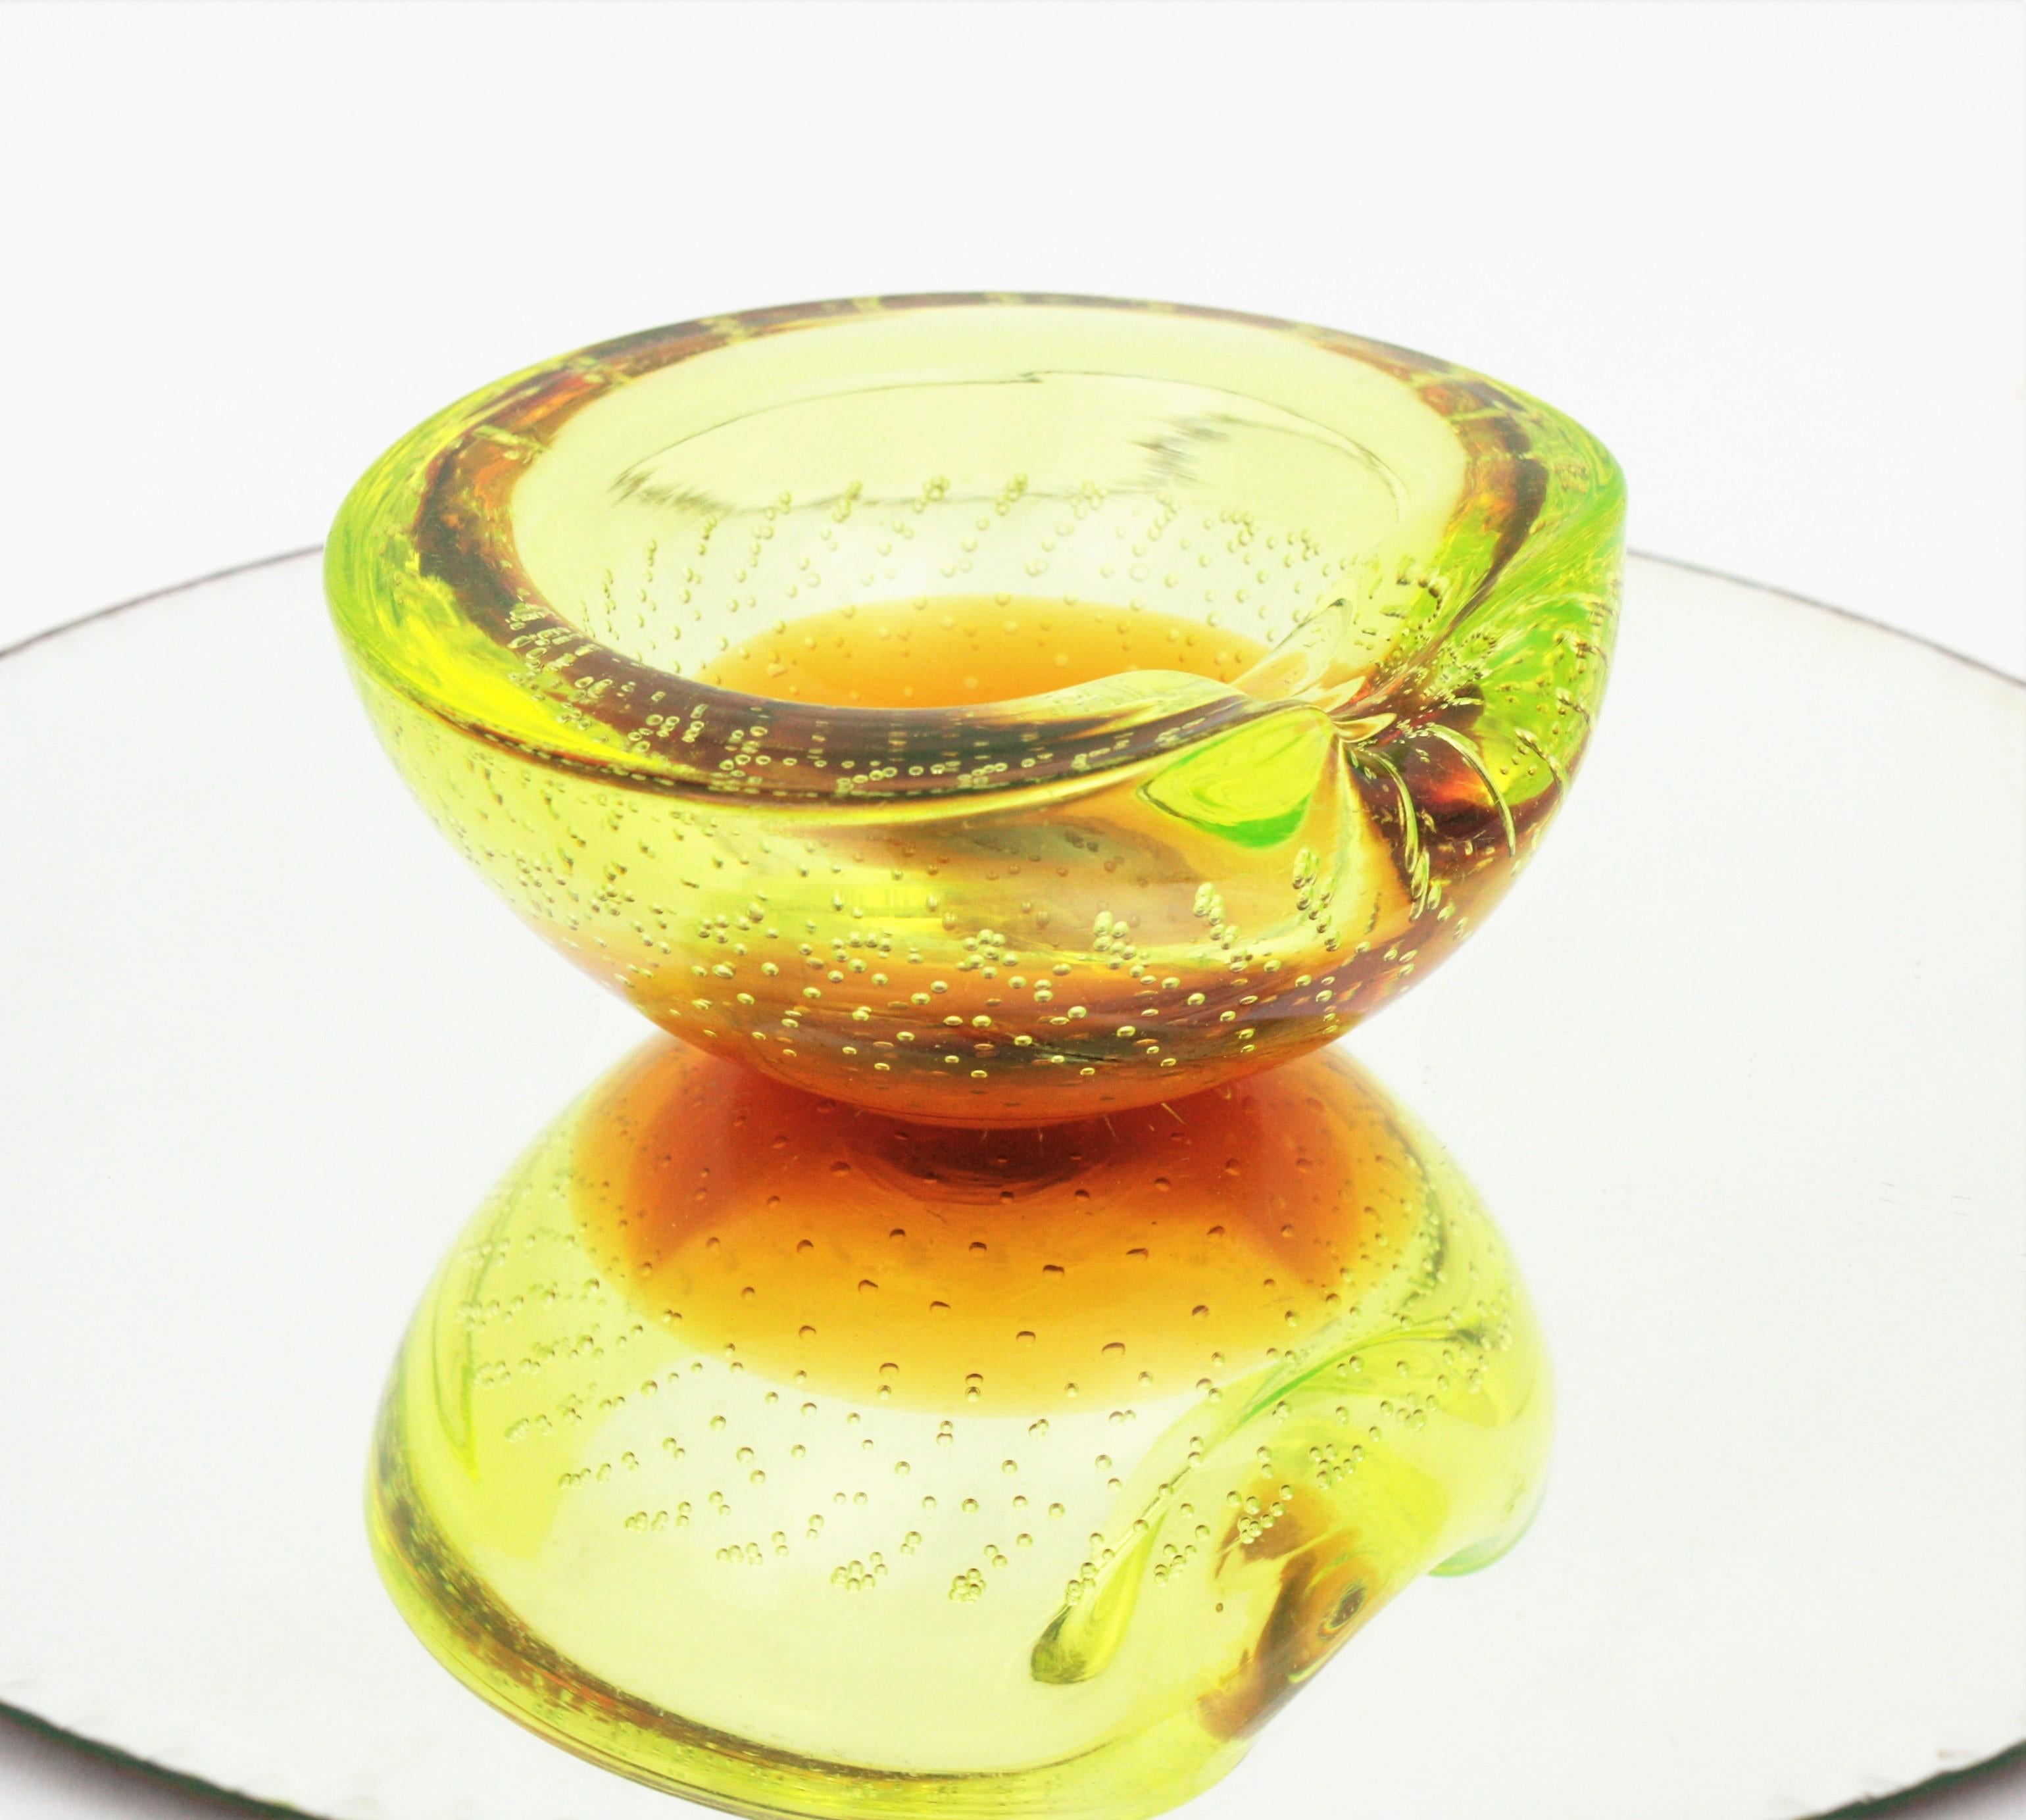 Galliano Ferro Murano Yellow Amber Bullicante Glass Bowl / Ashtray For Sale 4